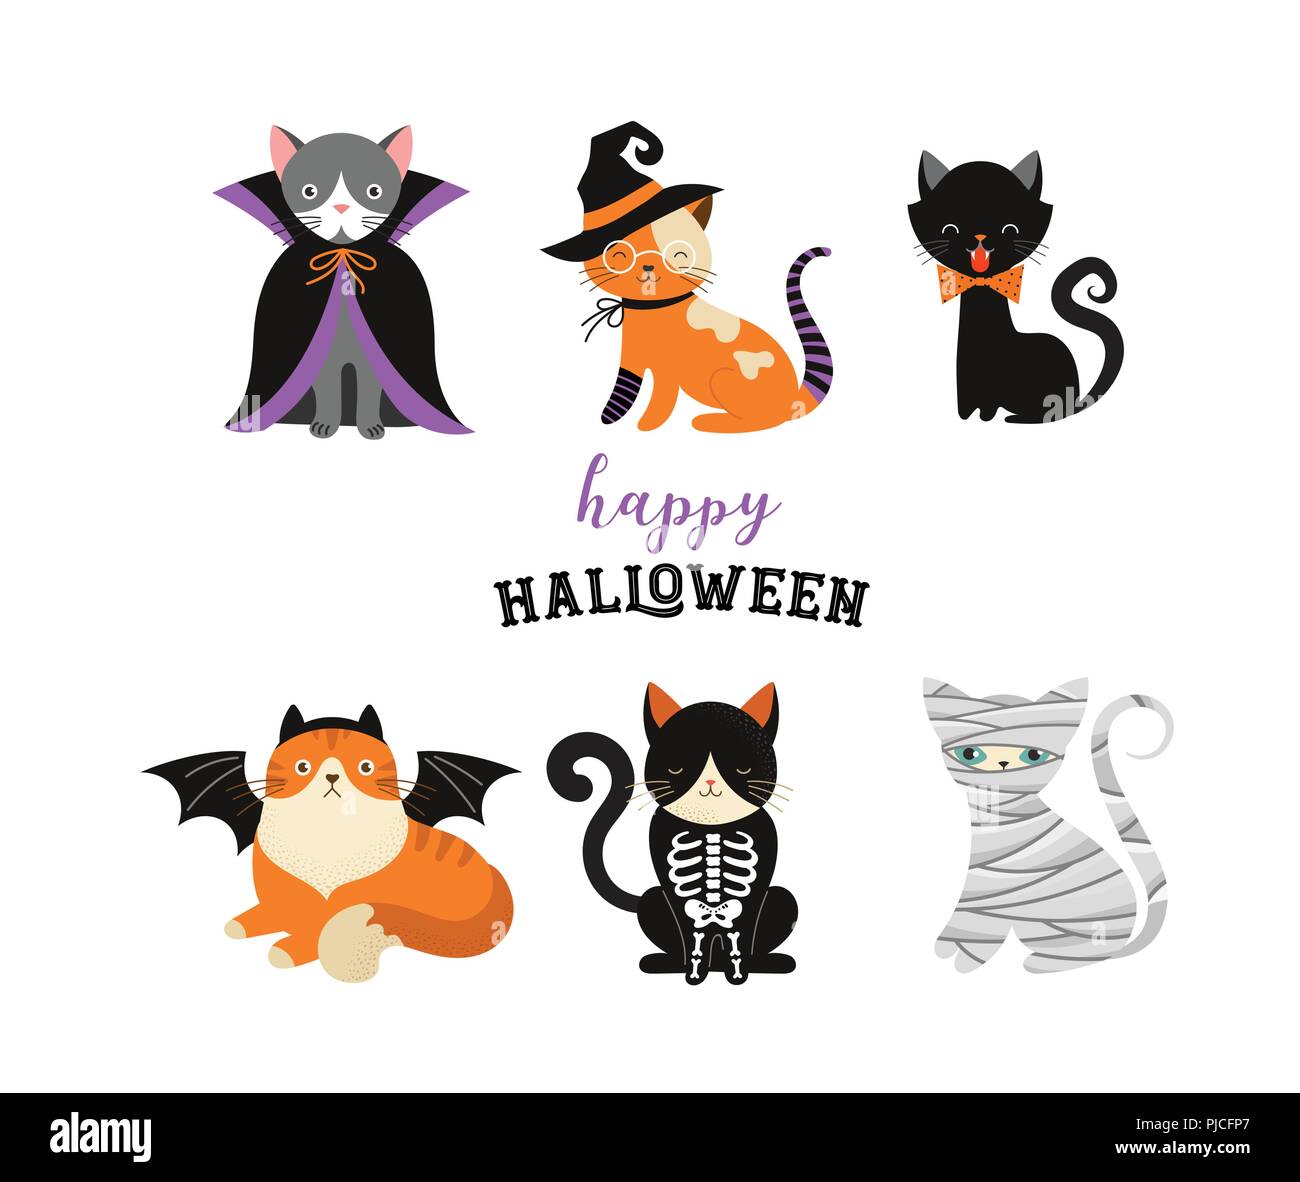 Happy Halloween - Katzen in Monster Kostüme, Halloween Party. Vector Illustration, Banner, Elemente einstellen Stock Vektor